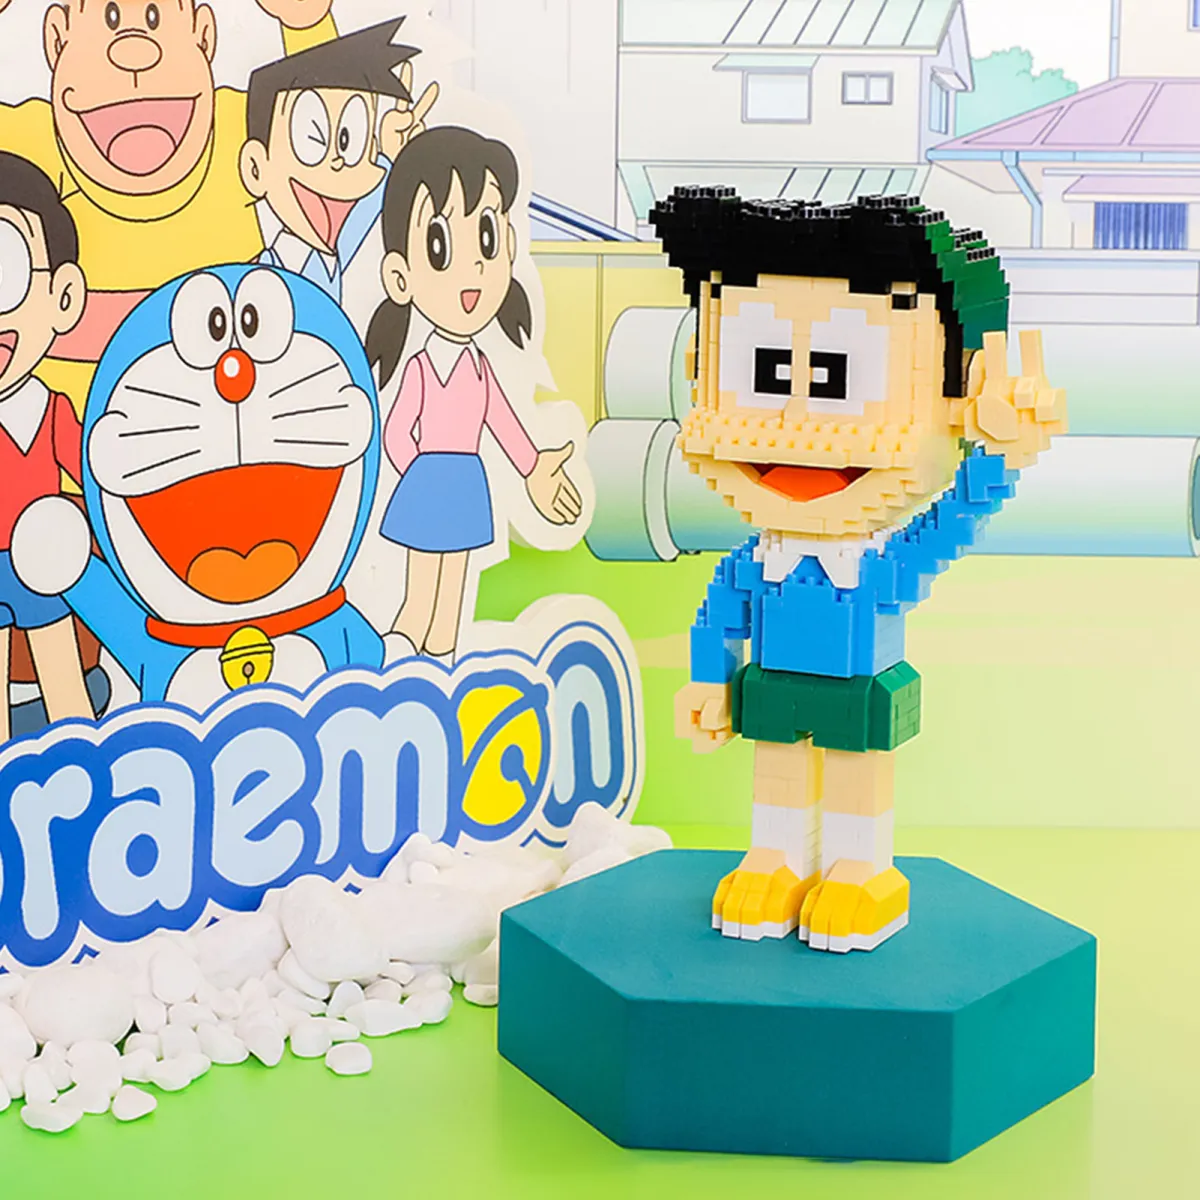 Xếp hình Nobita: Nếu bạn là fan của Doraemon và thích những trò chơi giải đố thú vị, thì hãy xem ngay bức ảnh về Xếp hình Nobita này để test trí thông minh của mình và thử sức mình với một trò chơi cổ điển nhưng không hề dễ dàng nhé!